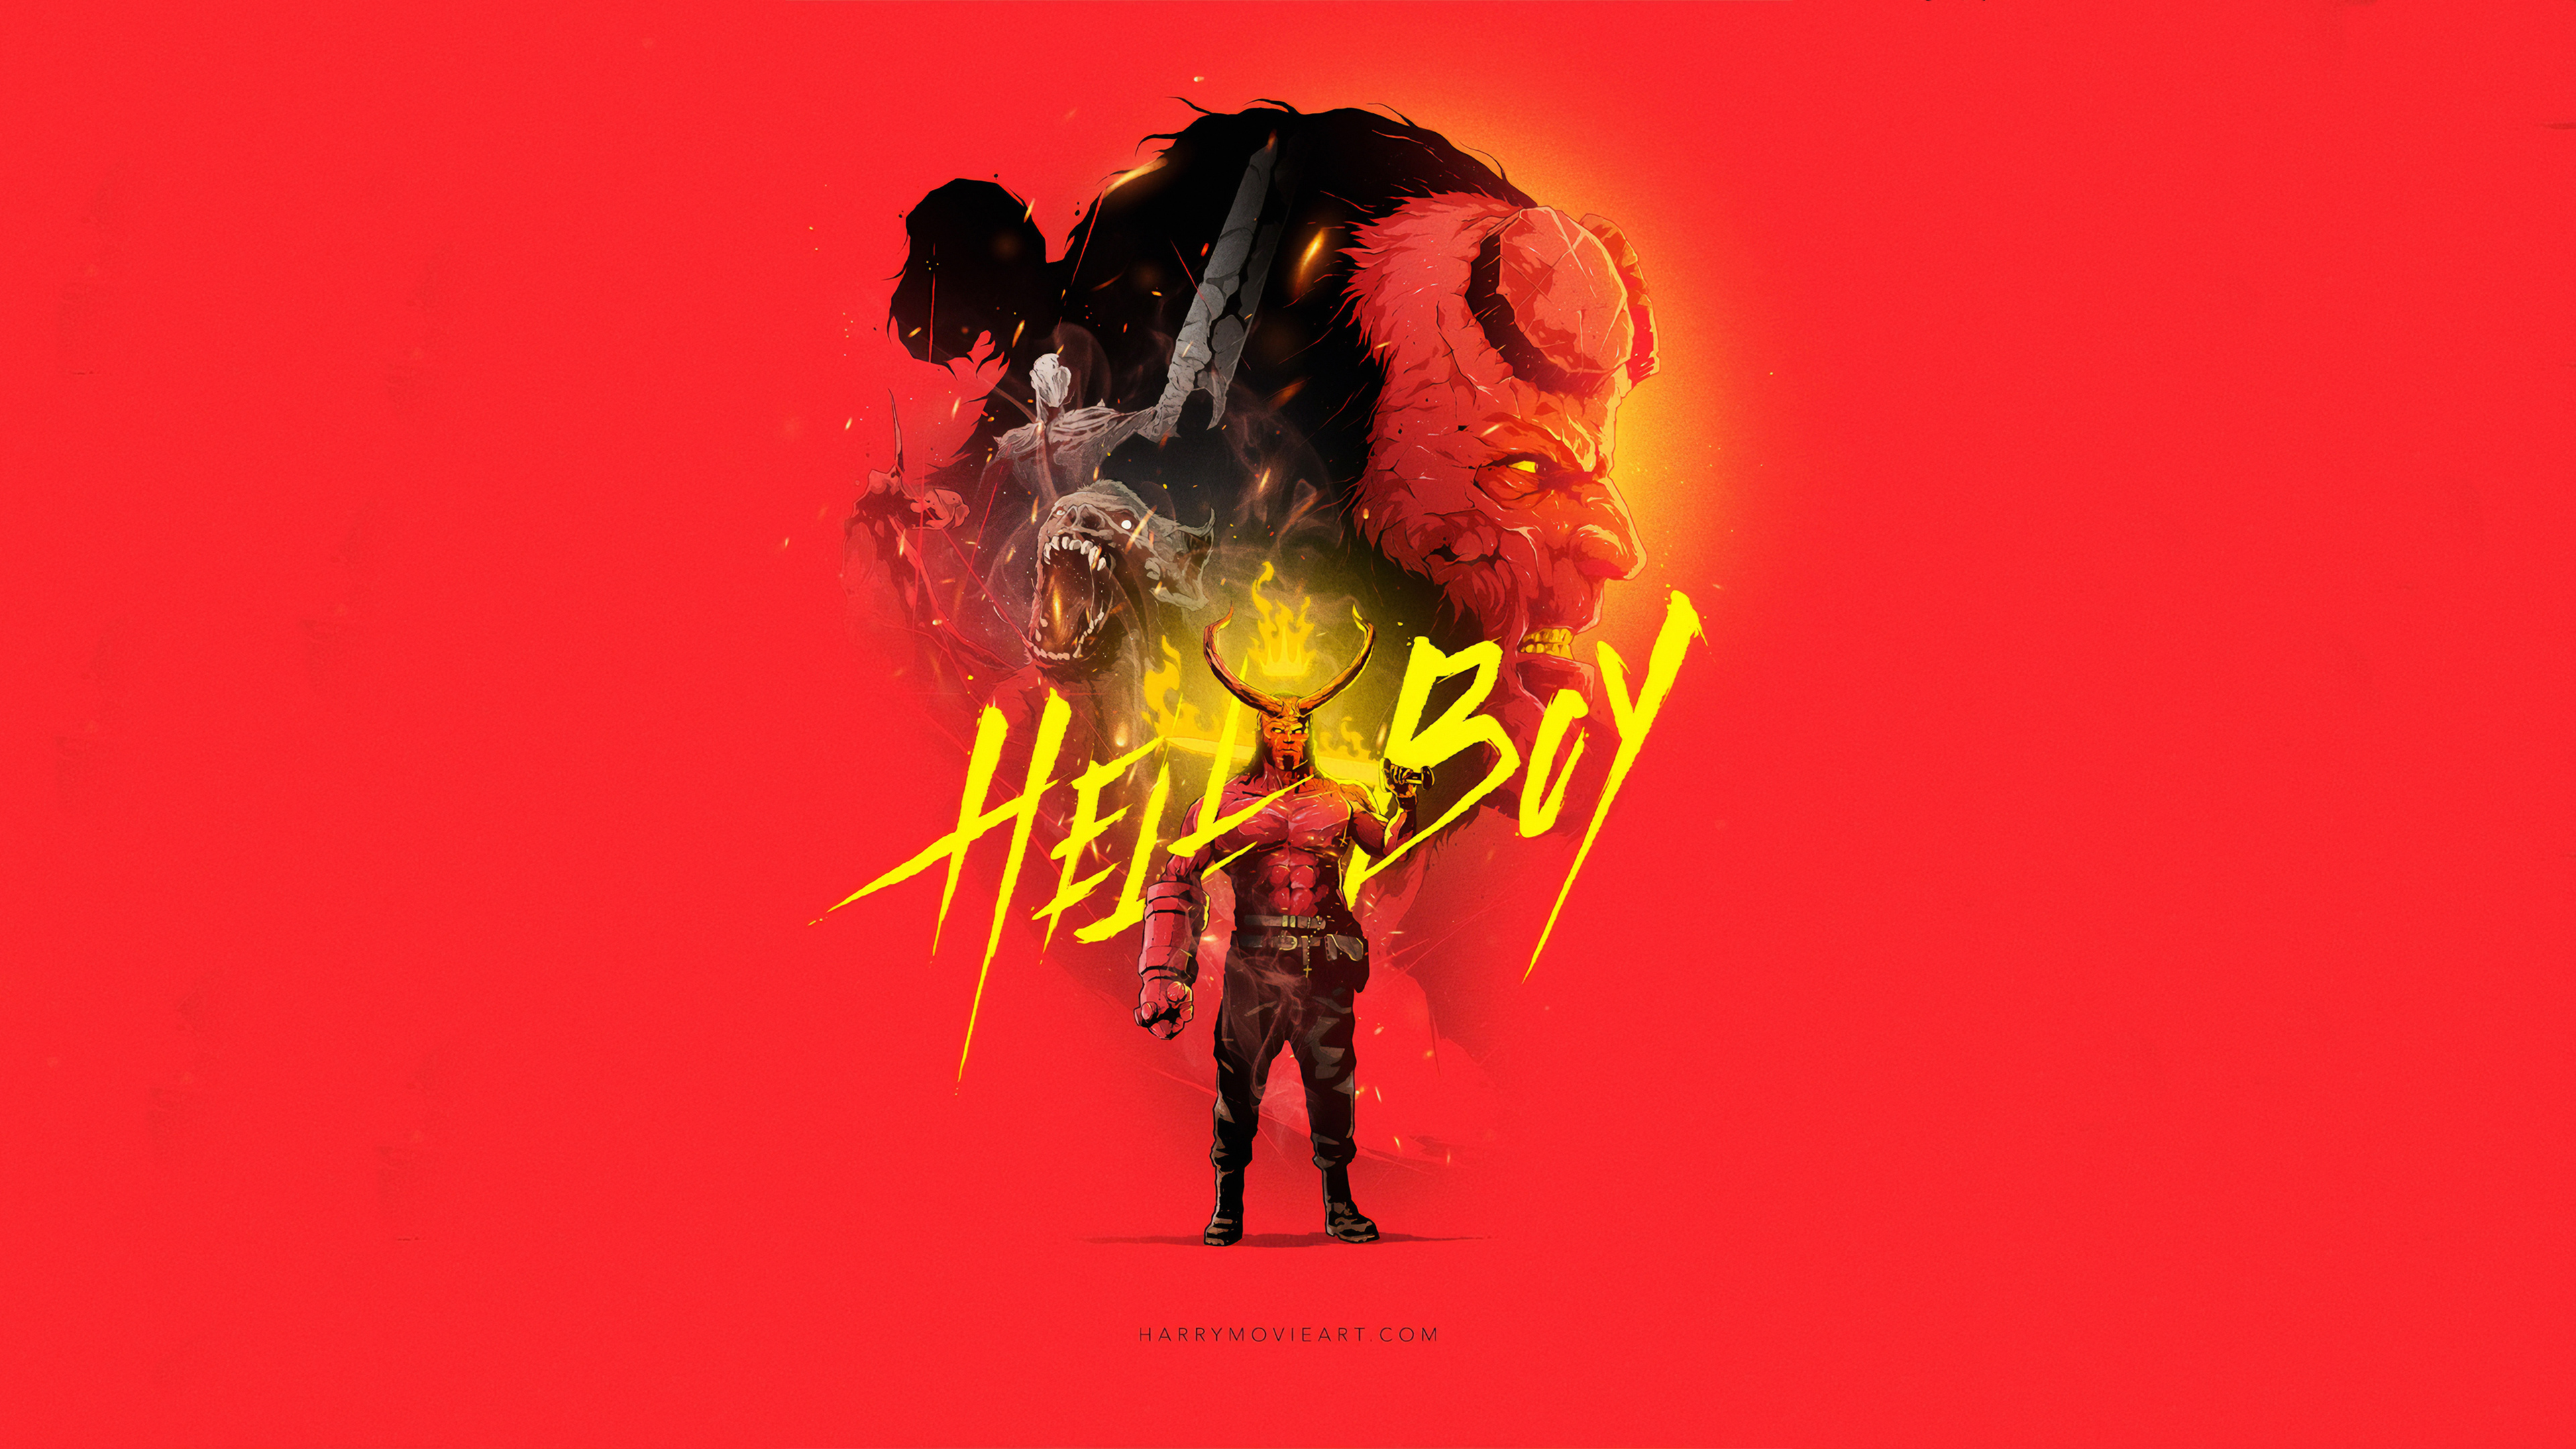 Movie Hellboy (2019) 4k Ultra HD Wallpaper